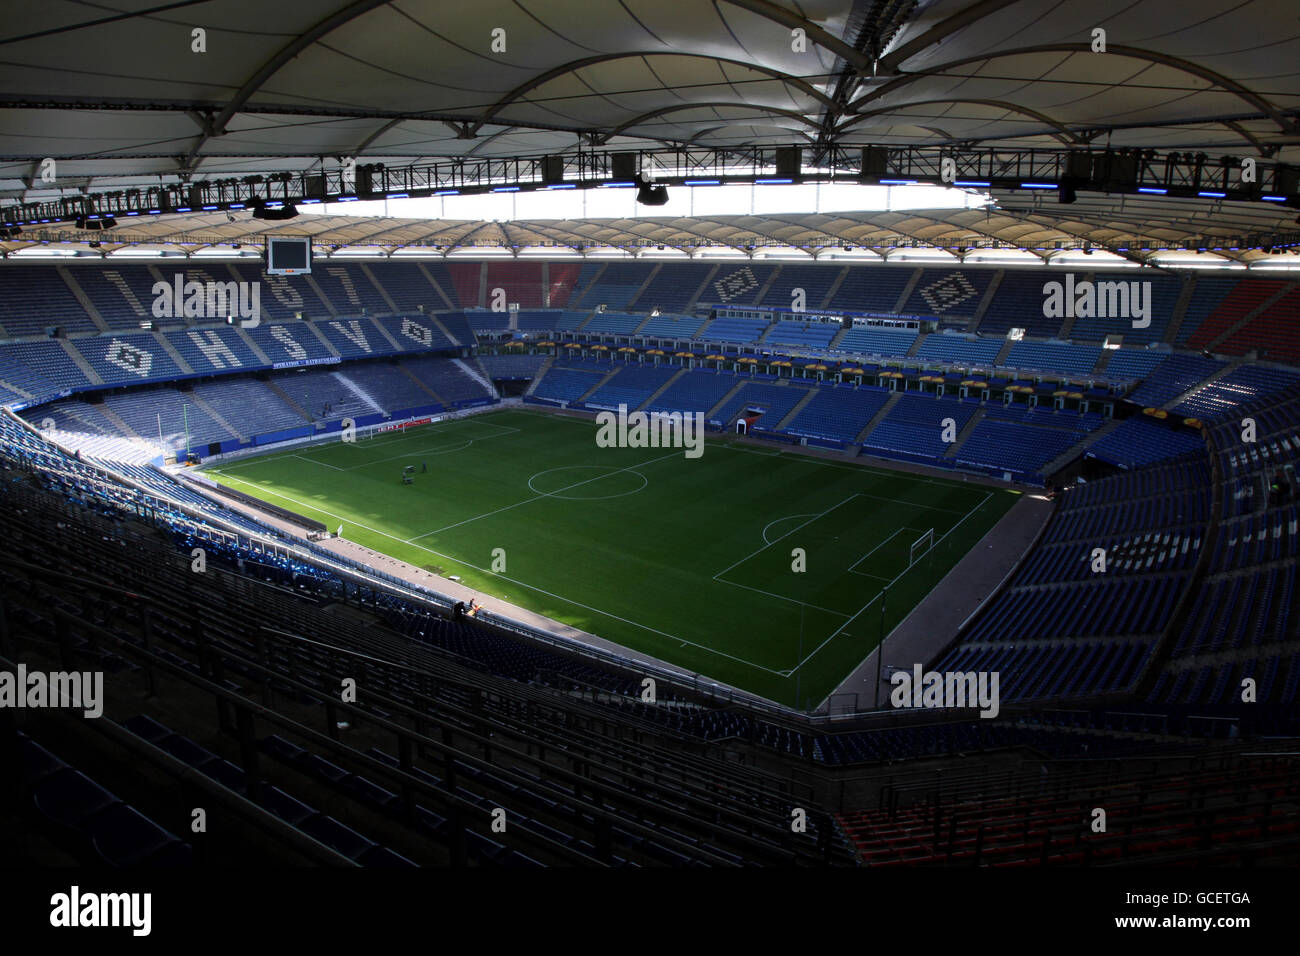 Football - Stade stock - HSH Nordbank Arena.Vue générale de l'intérieur de la HSH Nordbank Arena, stade de Hambourg SV Banque D'Images